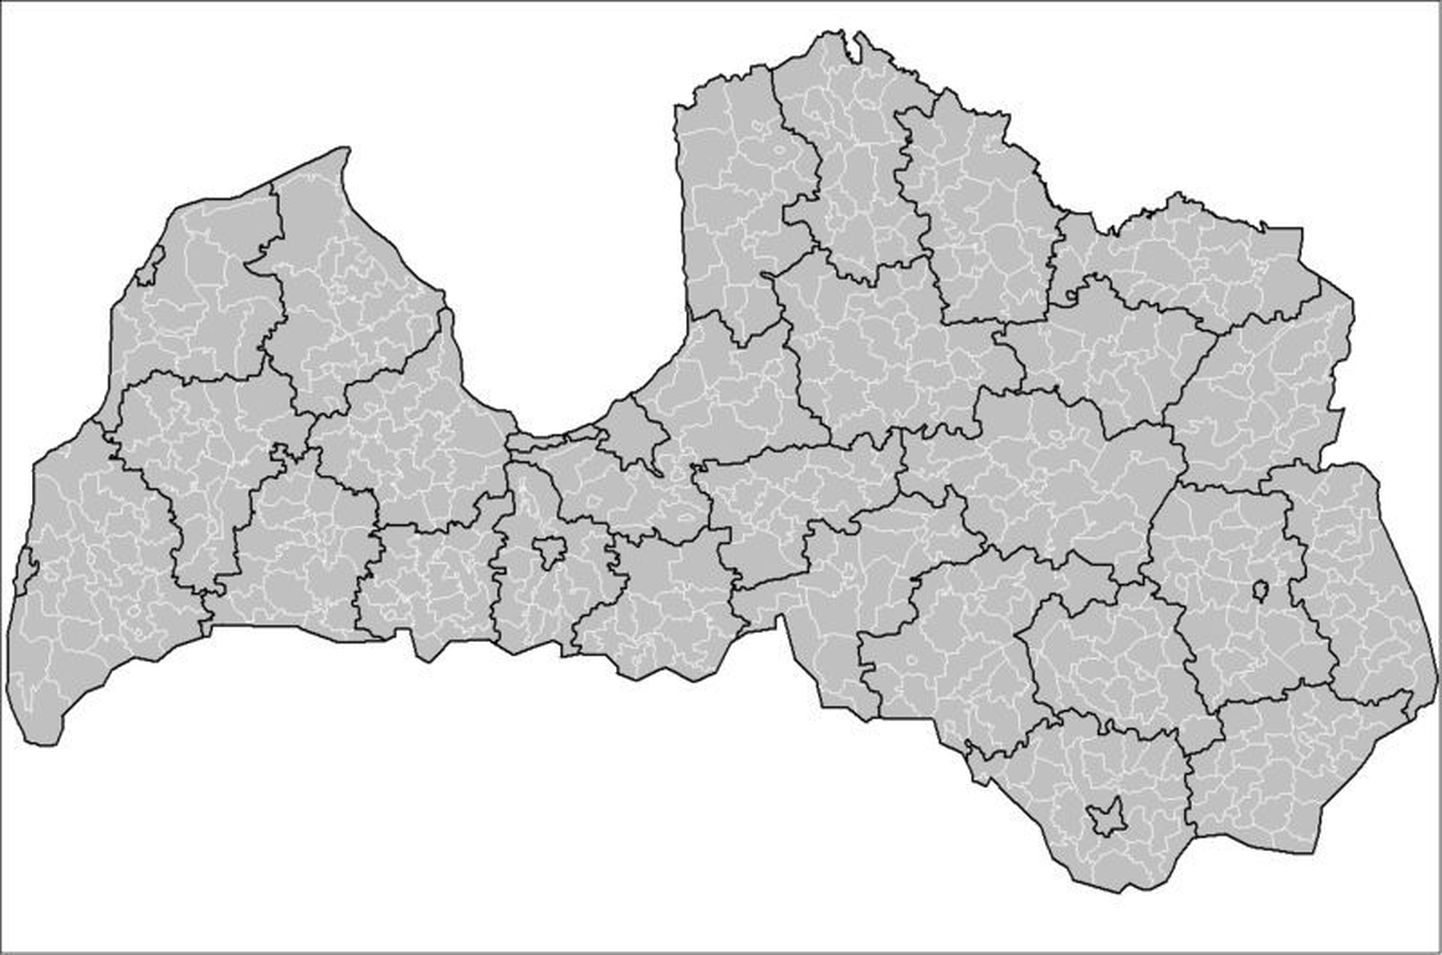 Läti jaguneb praegu halduslikult 26 rajooniks ja seitsmeks rajooni staatusega linnaks, kohalikke omavalitsusi oli aga seni kokku üle poole tuhande.